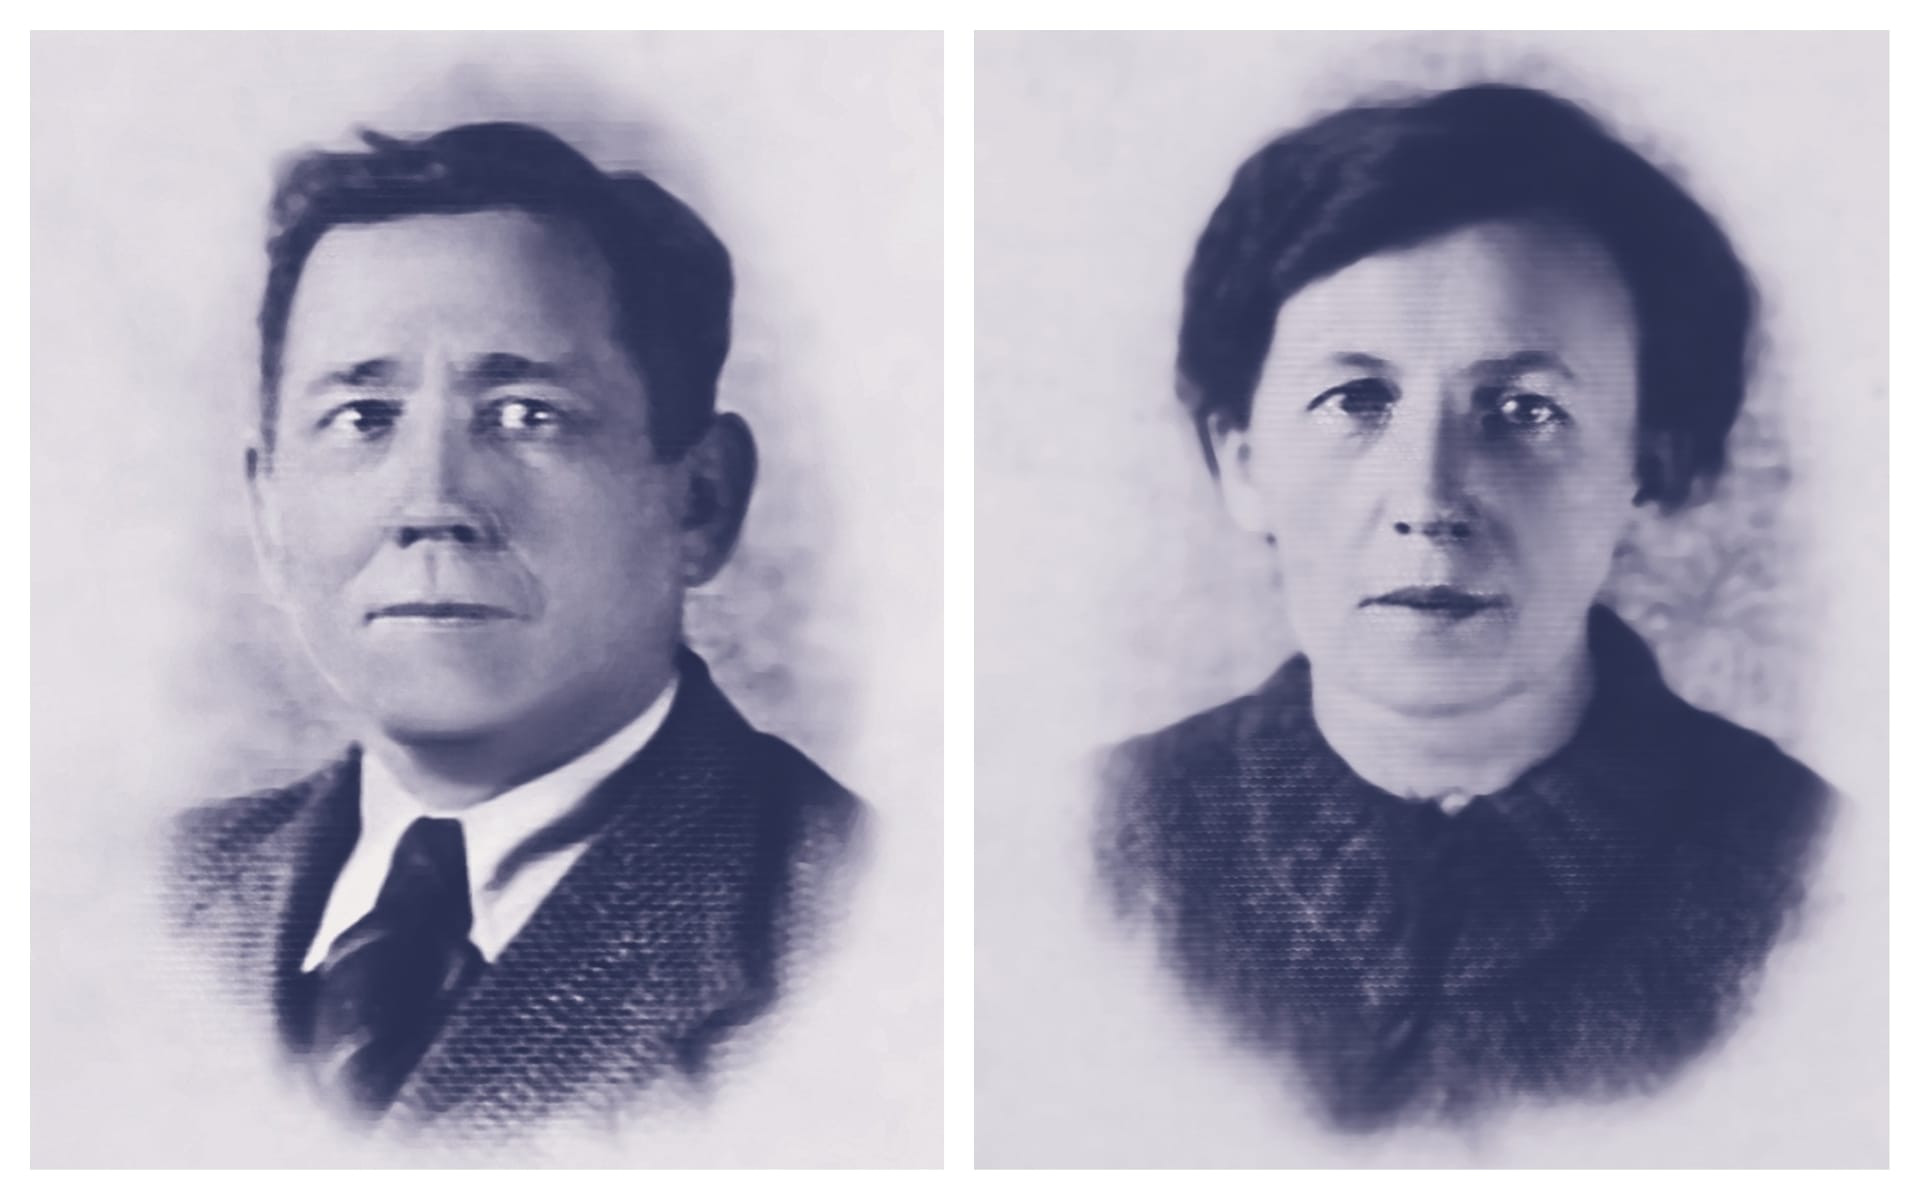 לאון ומריאנה לובקיביץ' היו בעליה של מאפייה וסיפקו אוכל ליהודים במסתור. הם הוצאו להורג על ידי הגרמנים (צילום: באדיבות מכון פילצקי)